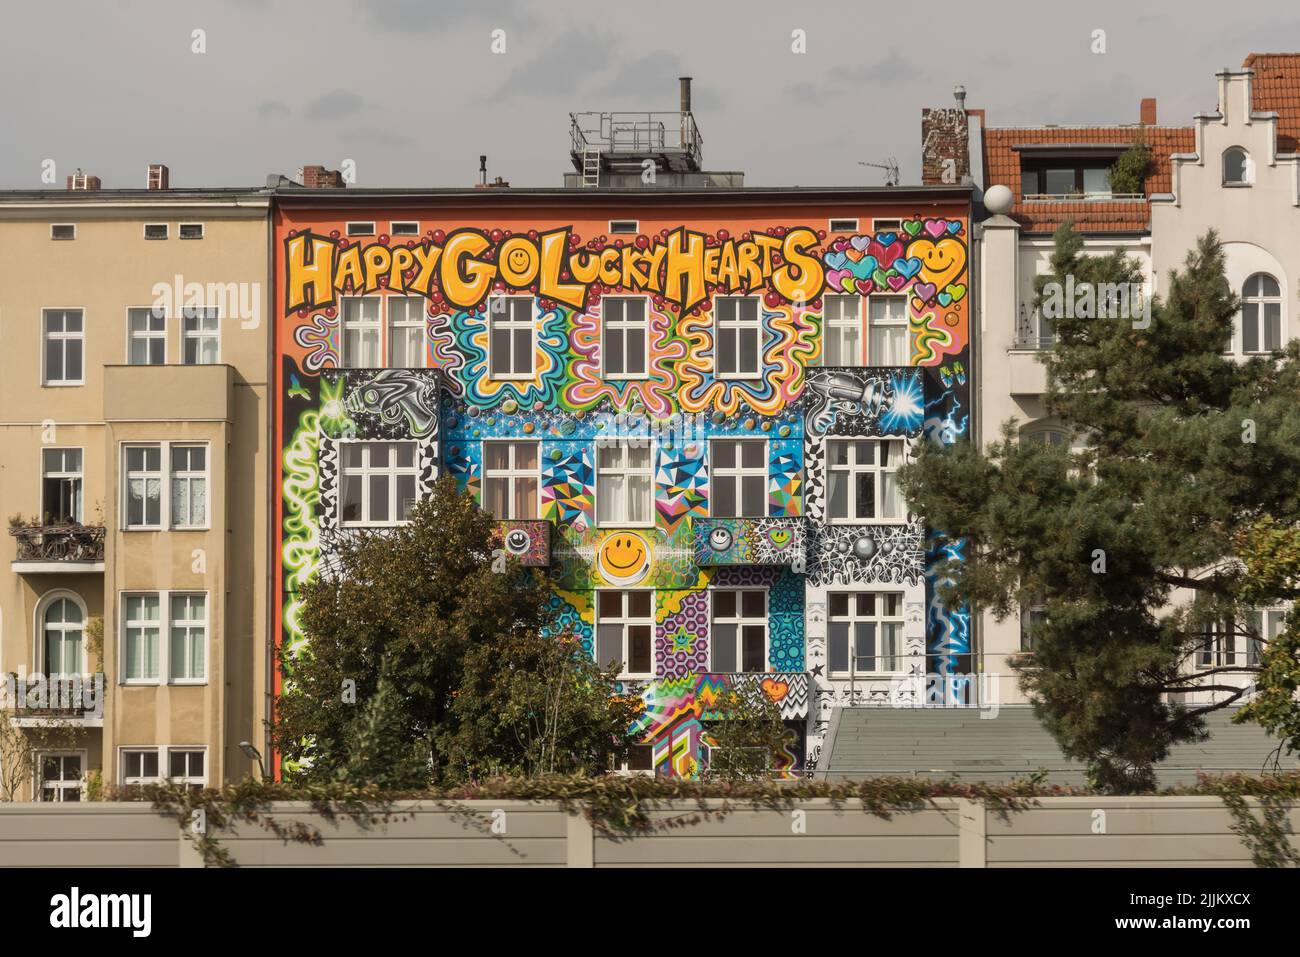 Berlín, BUNT BEMALTE FASSADE // Berlín, fachada pintada de colores Foto de stock